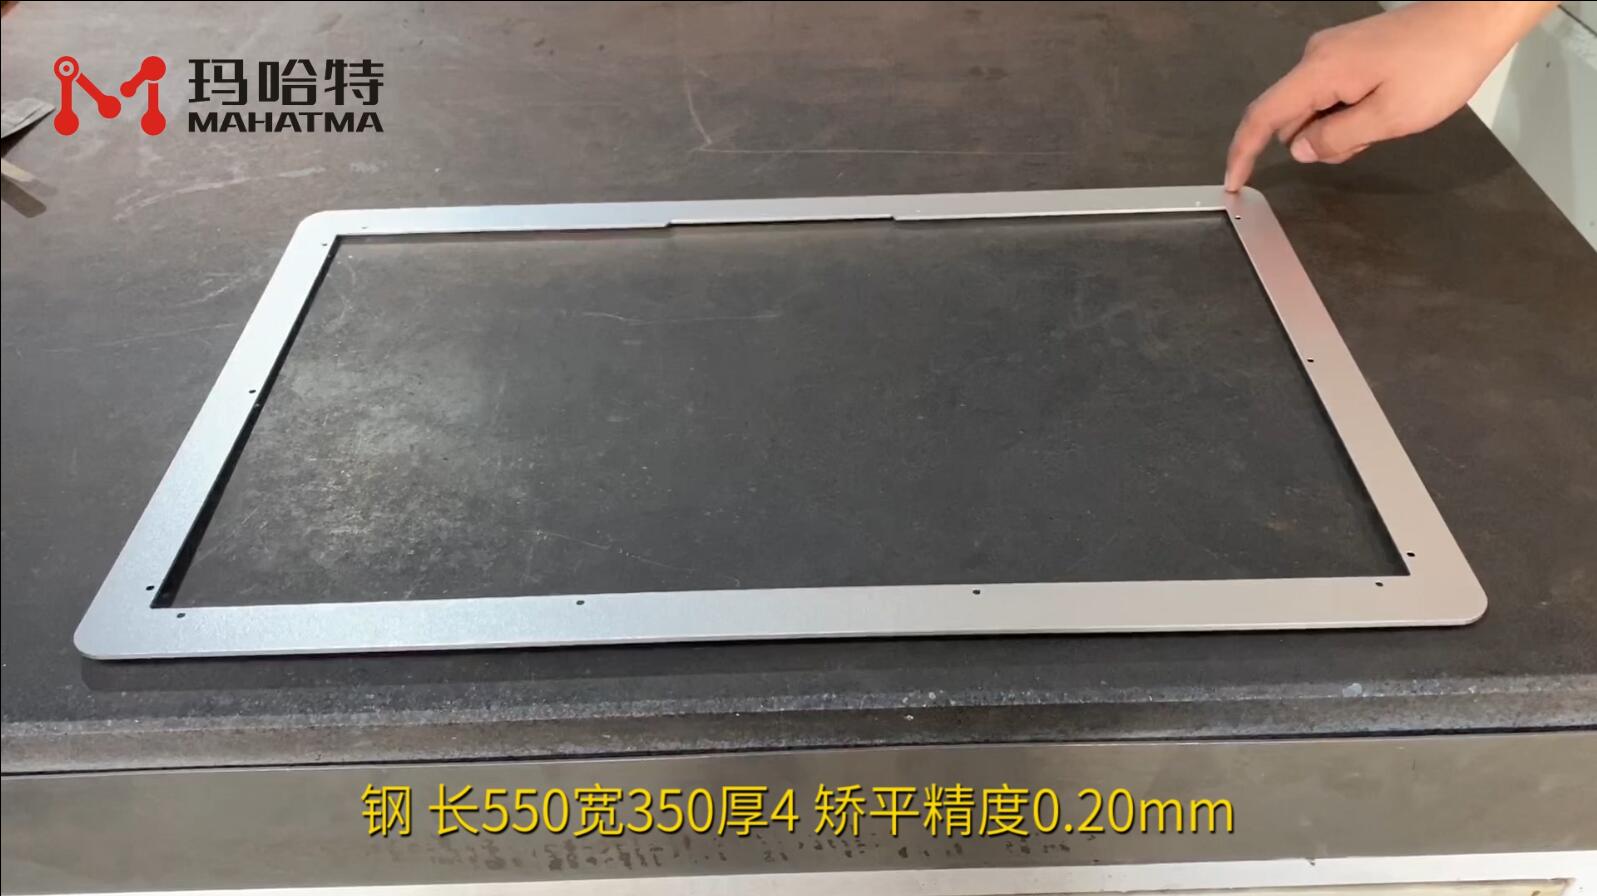 钢 MHT60-600 长方形 长550宽350厚4 矫平精度0.20mm